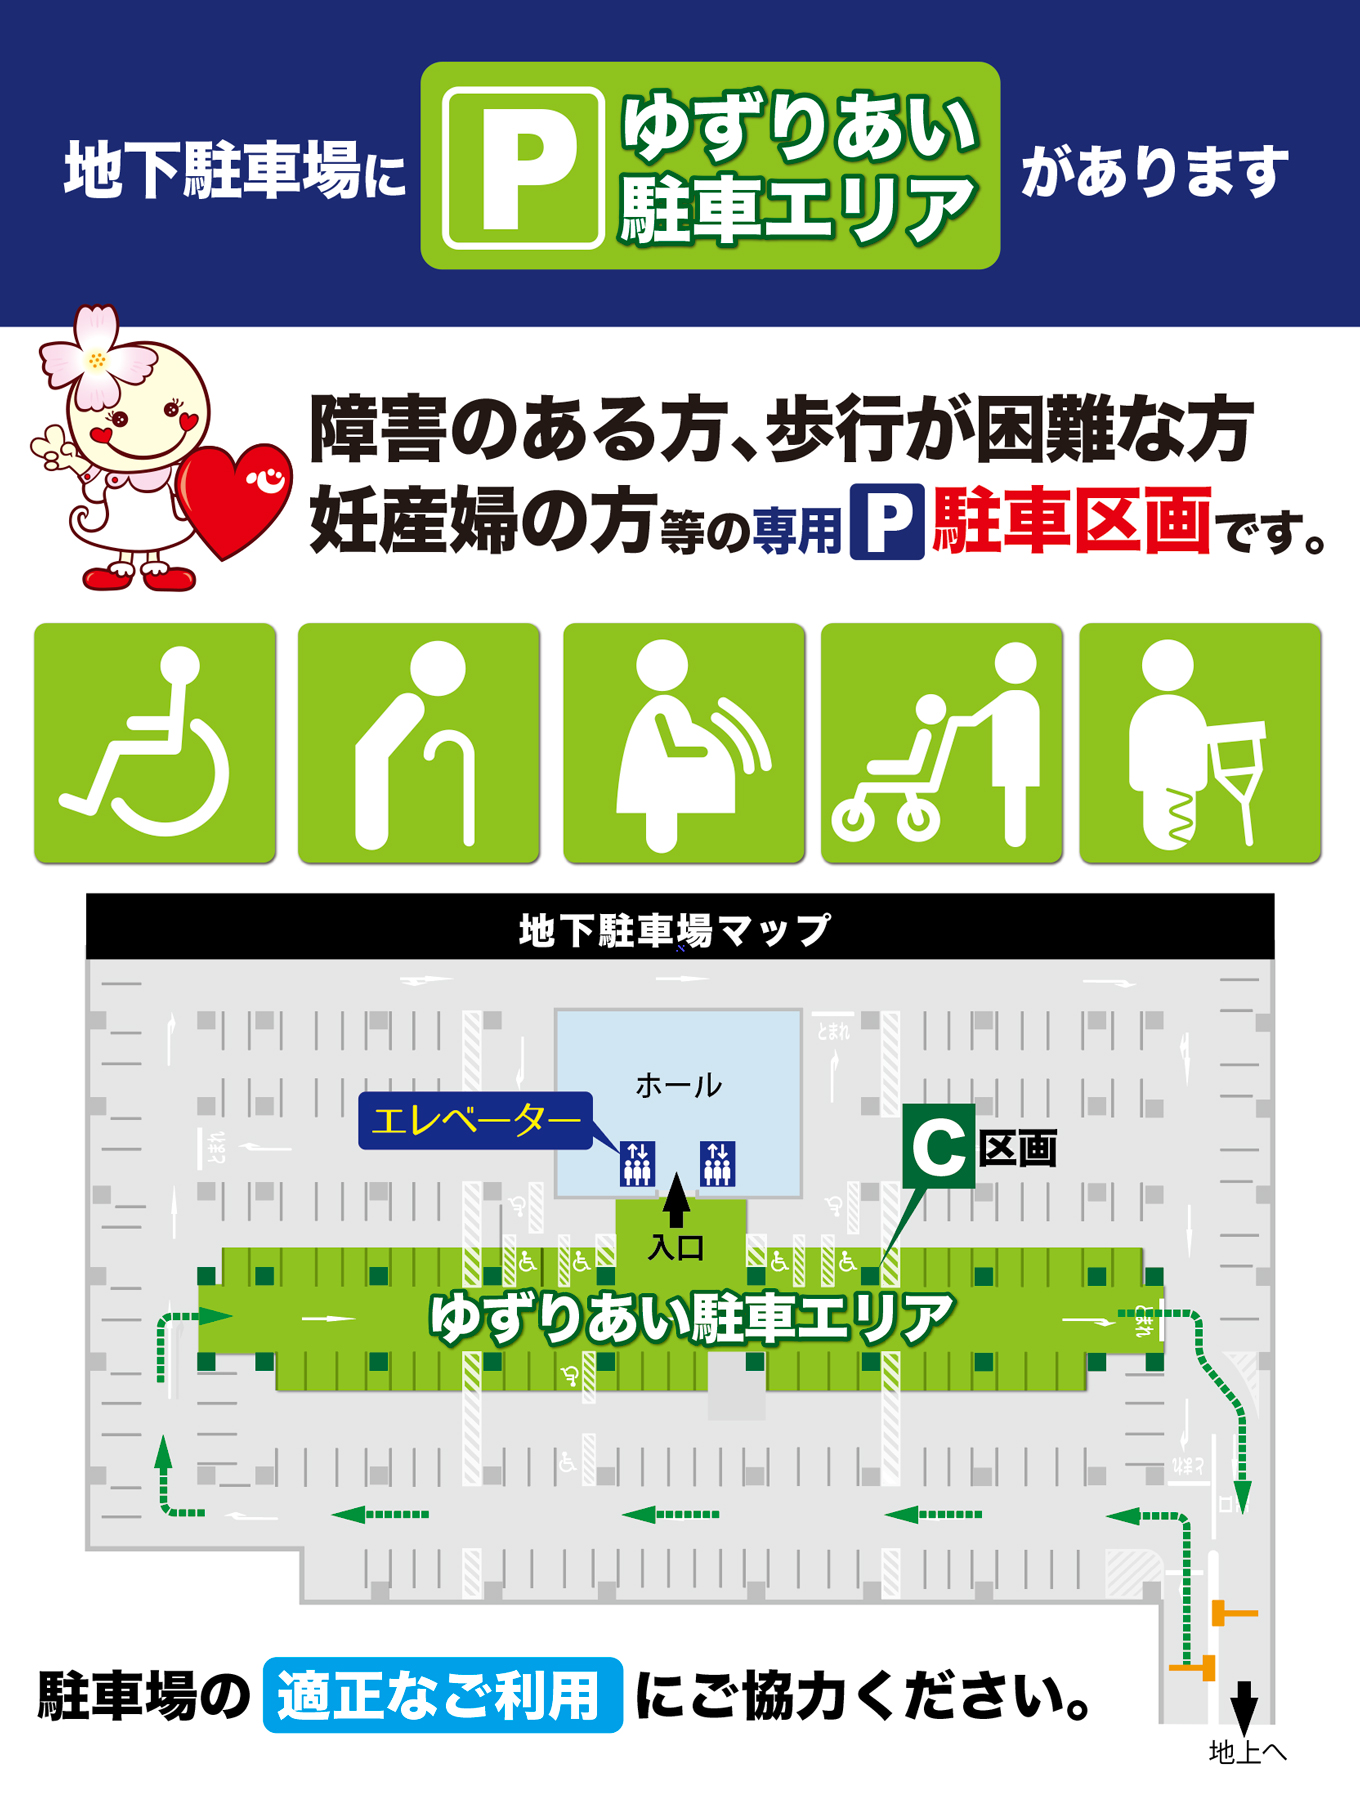 地下駐車場に、障害のある方、歩行が困難な方、妊産婦の方等の専用駐車区画「ゆずりあい駐車エリア」がございます。